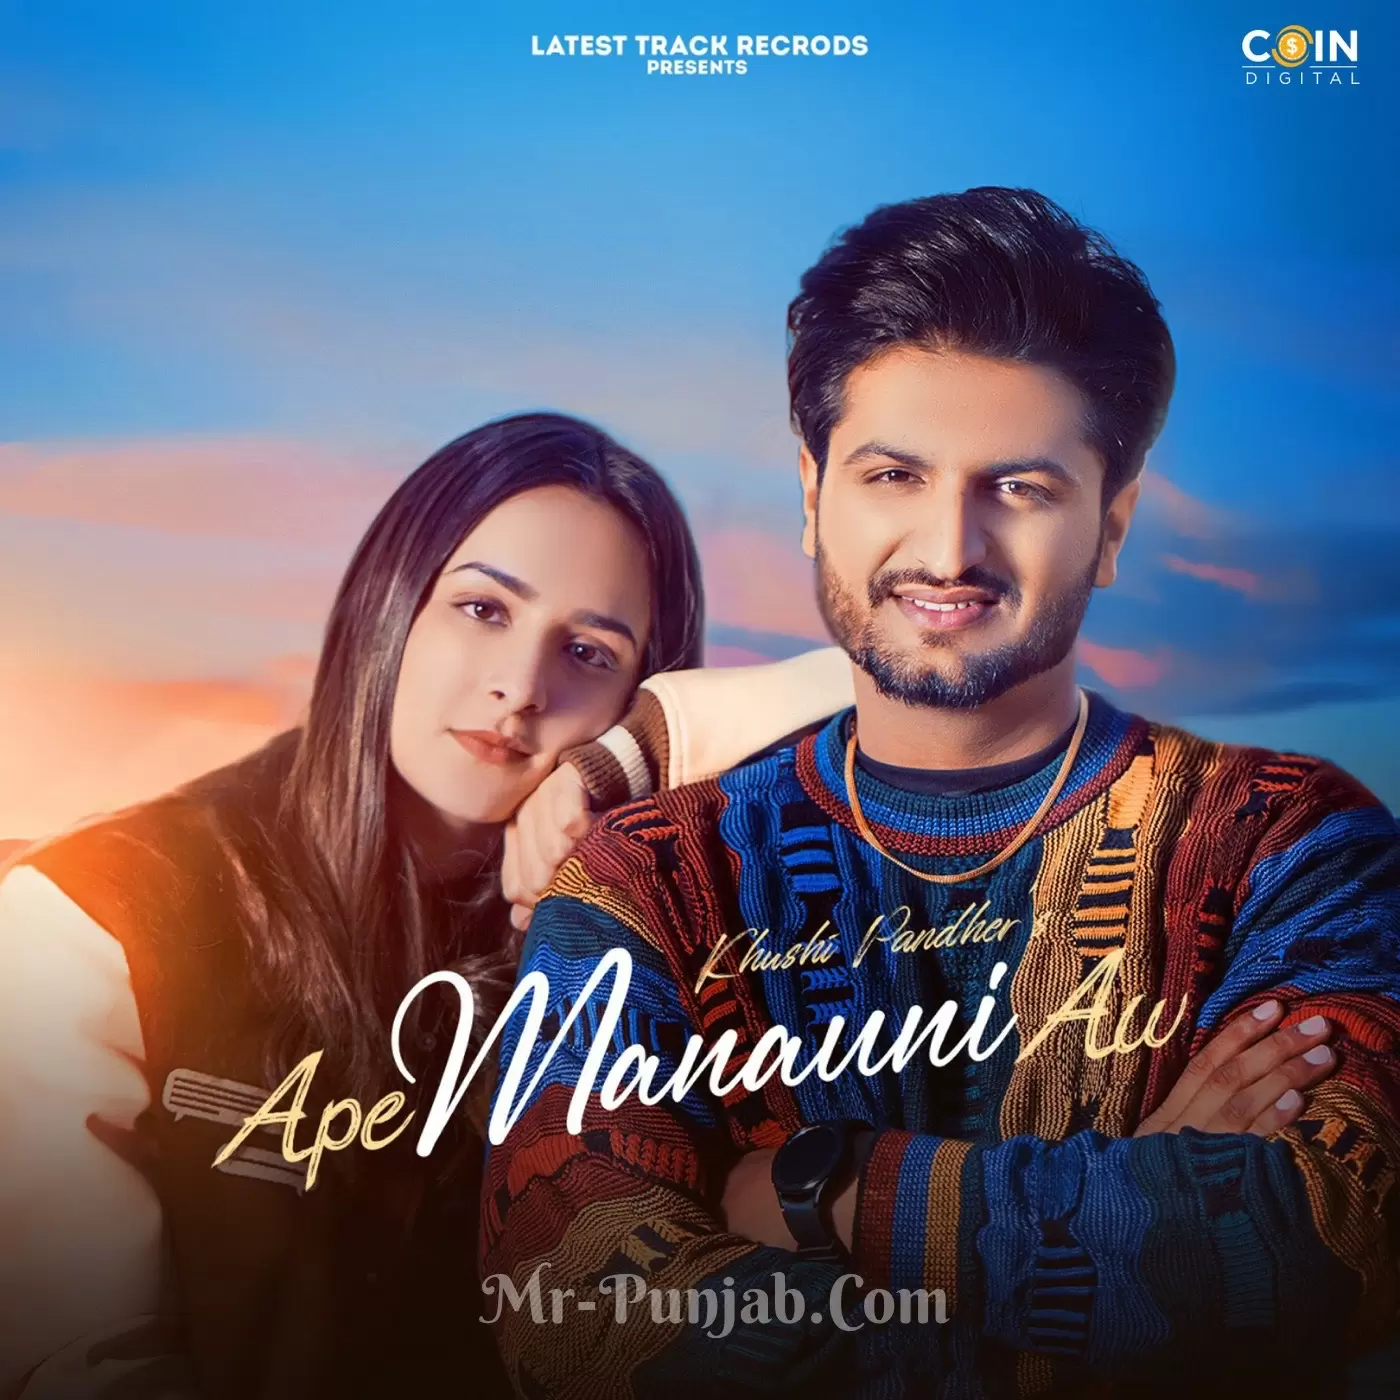 Ape Manauni Aw Khushi Pandher Mp3 Download Song - Mr-Punjab